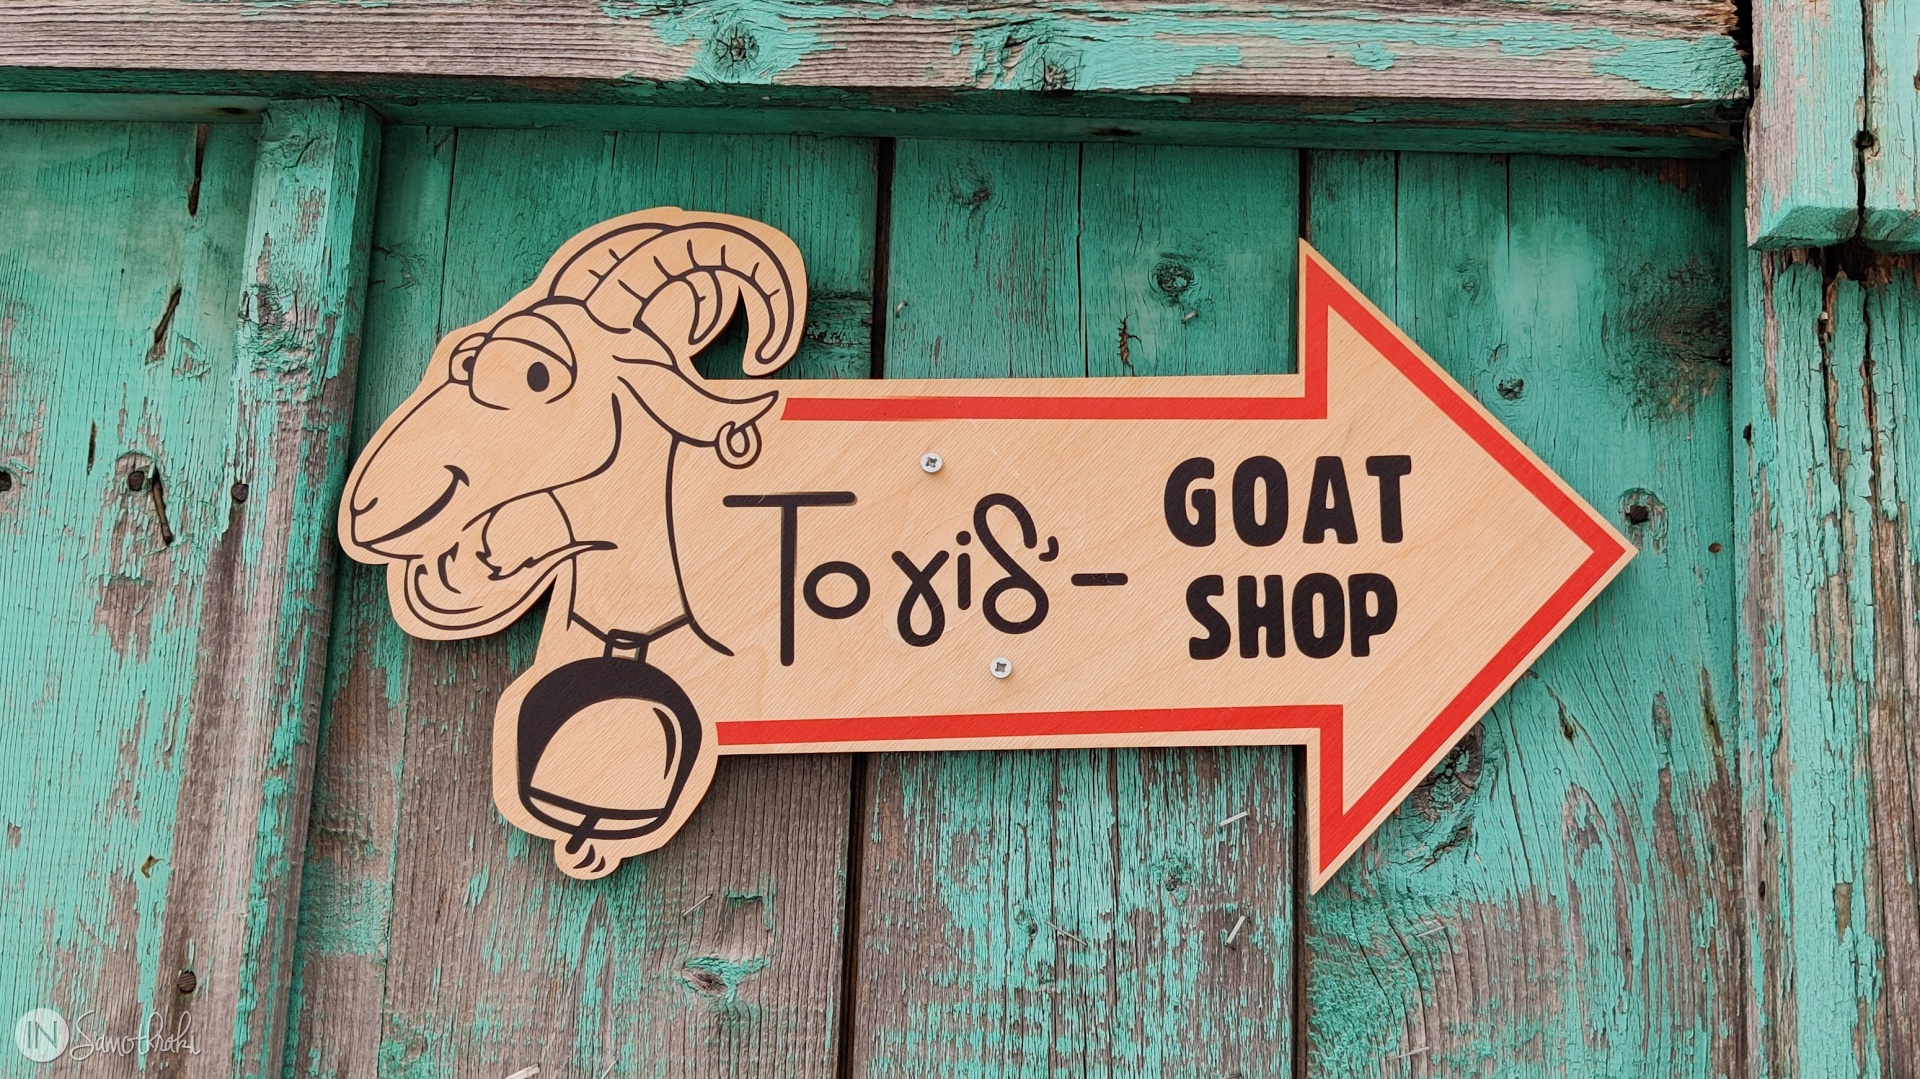 To Gid' - Goat Shop, magazinul cu căprițe